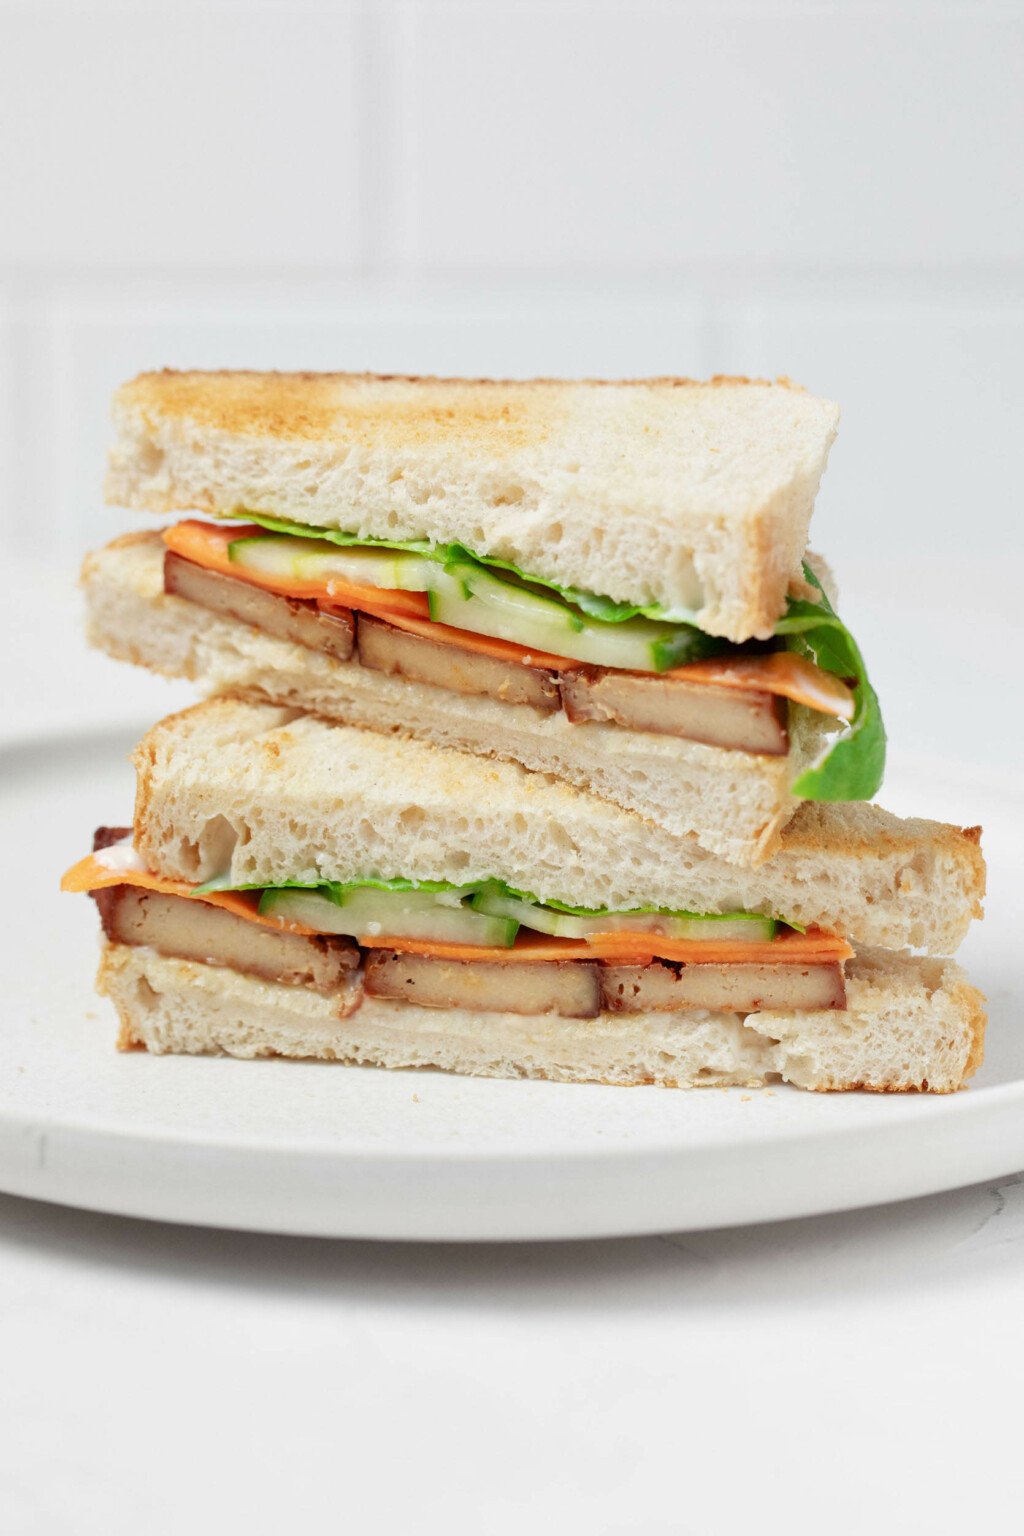 Μια γωνιακή εικόνα ενός σάντουιτς τουρσί λαχανικών και καπνιστού τόφου.  Το σάντουιτς έχει κοπεί στη μέση, αποκαλύπτοντας μια διατομή με αγγούρι, καρότο και μαγιονέζα, μαζί με το τόφου. 